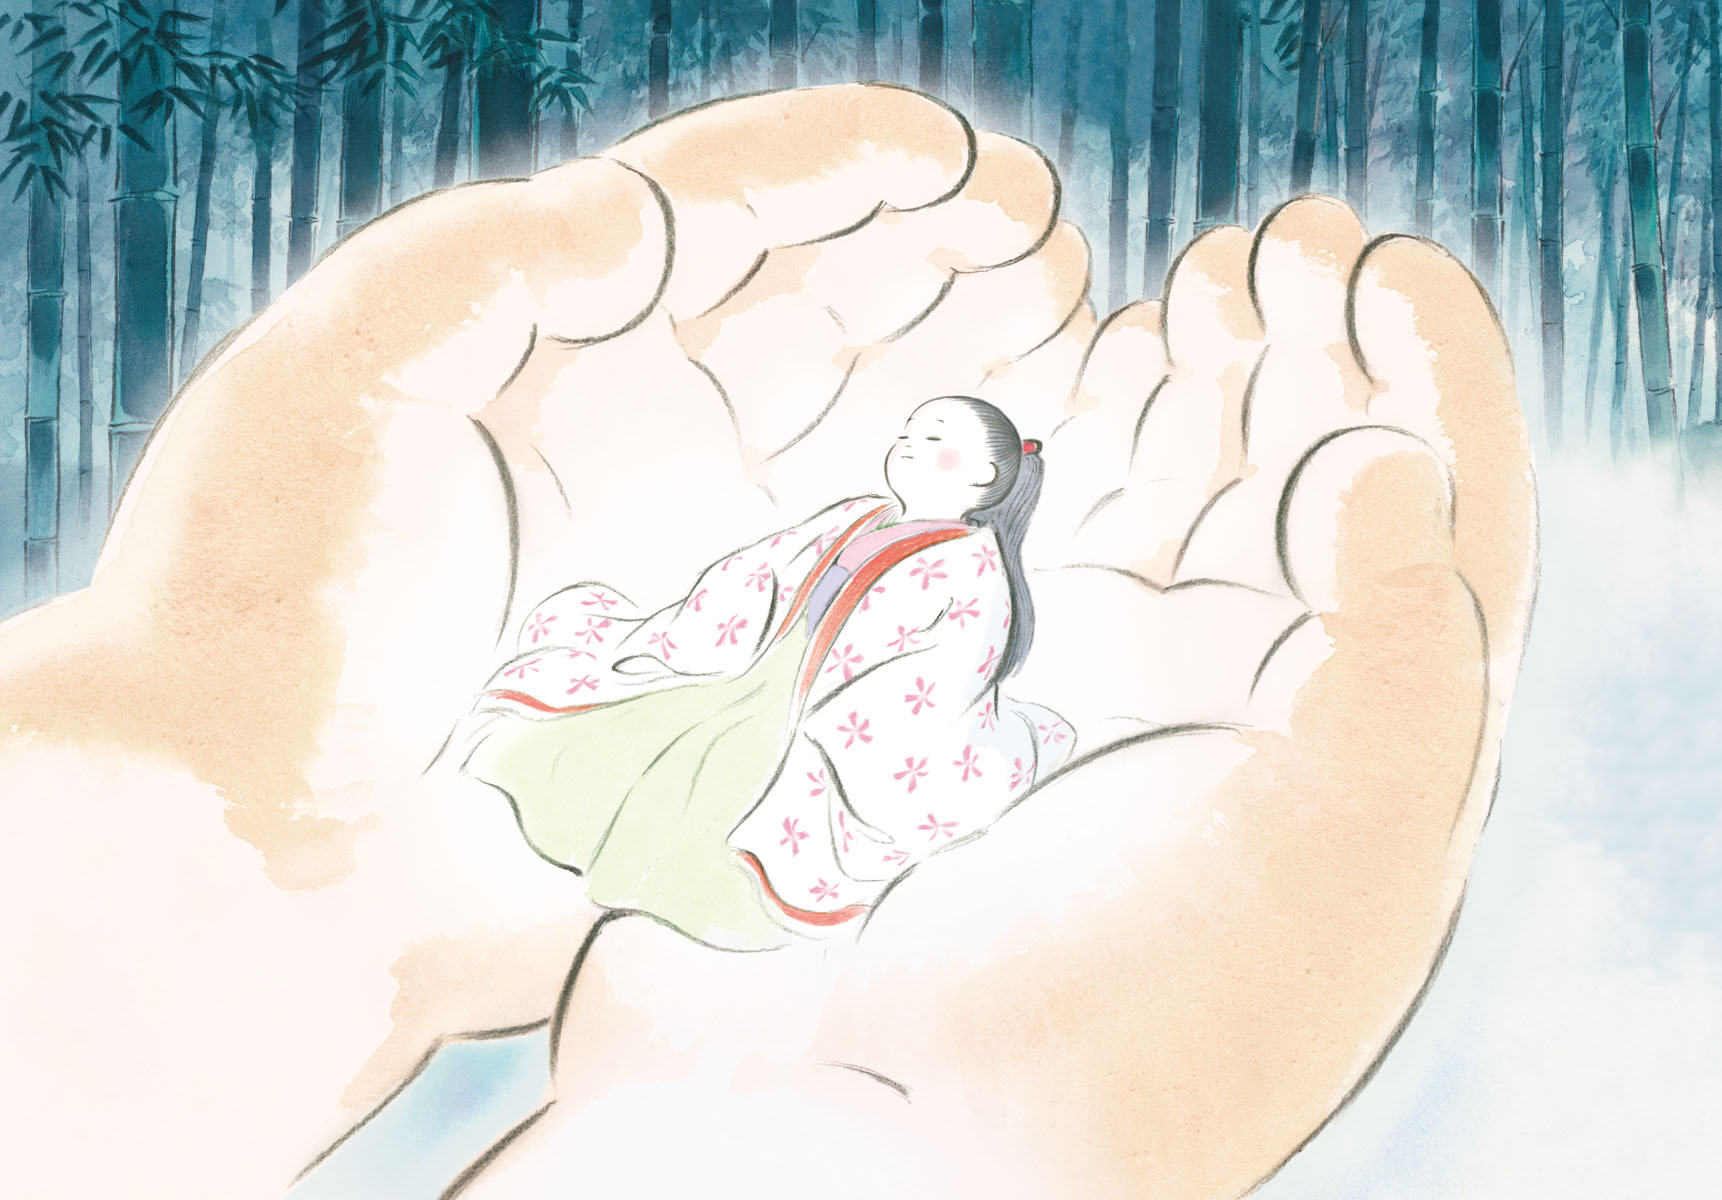 La storia della principessa splendente di Isao Takahata, dal 25 al 31 luglio al cinema